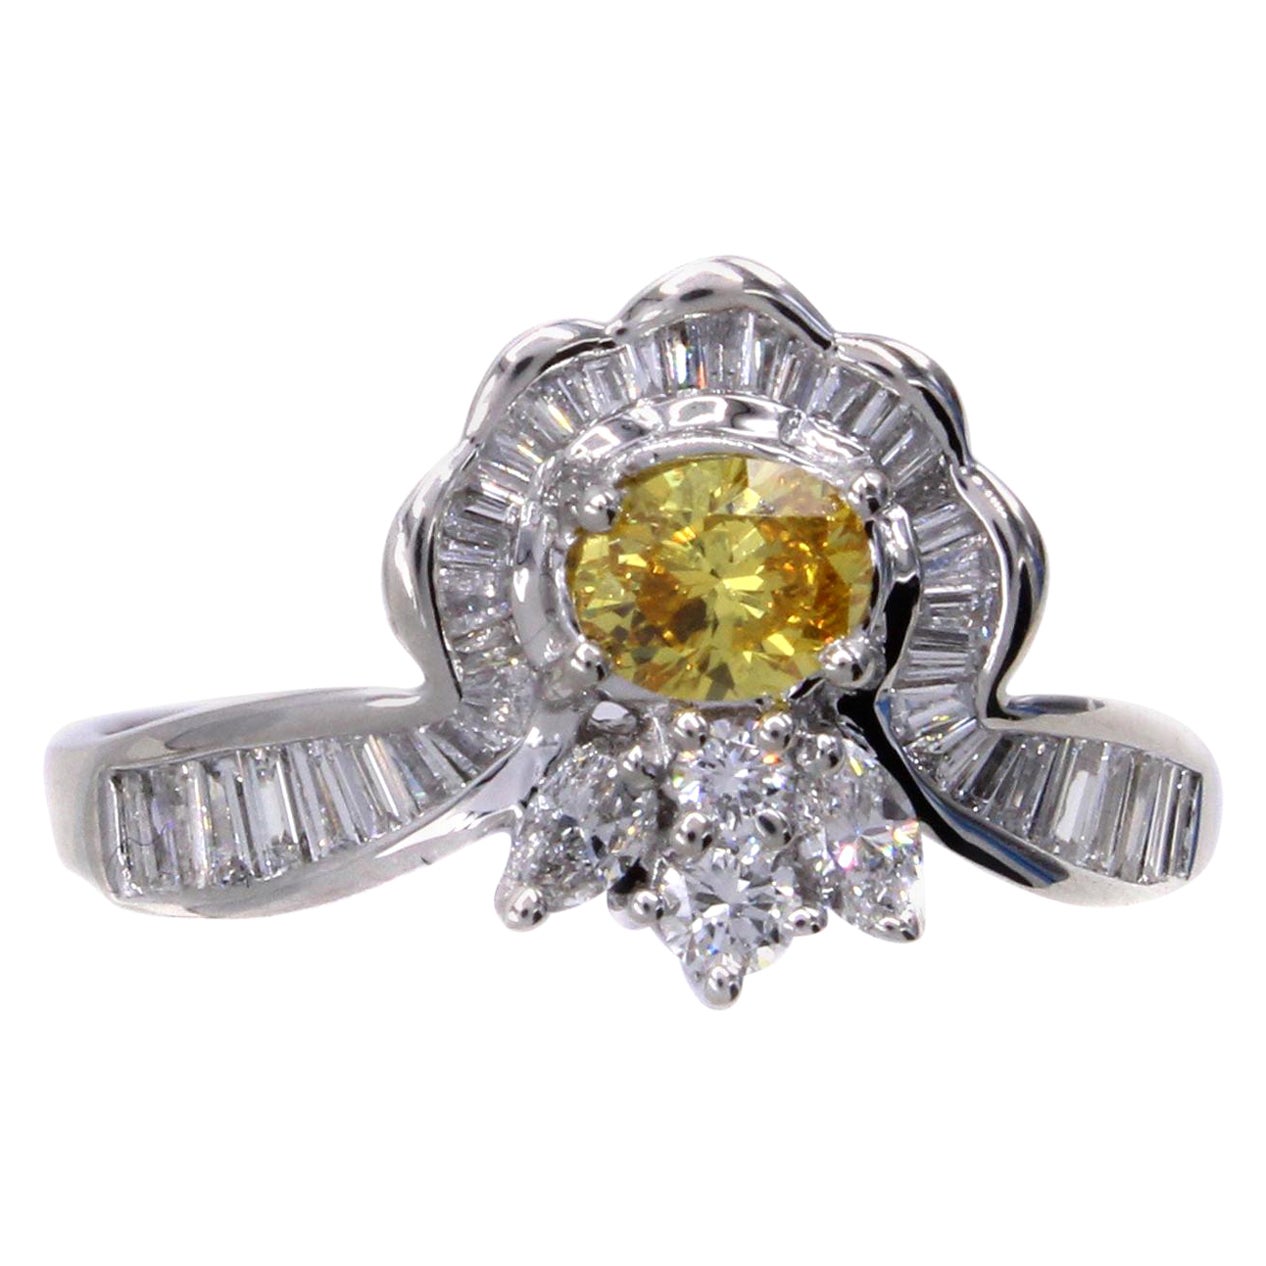 Bague de fiançailles en platine avec diamants naturels de couleur orange-jaune vif de fantaisie